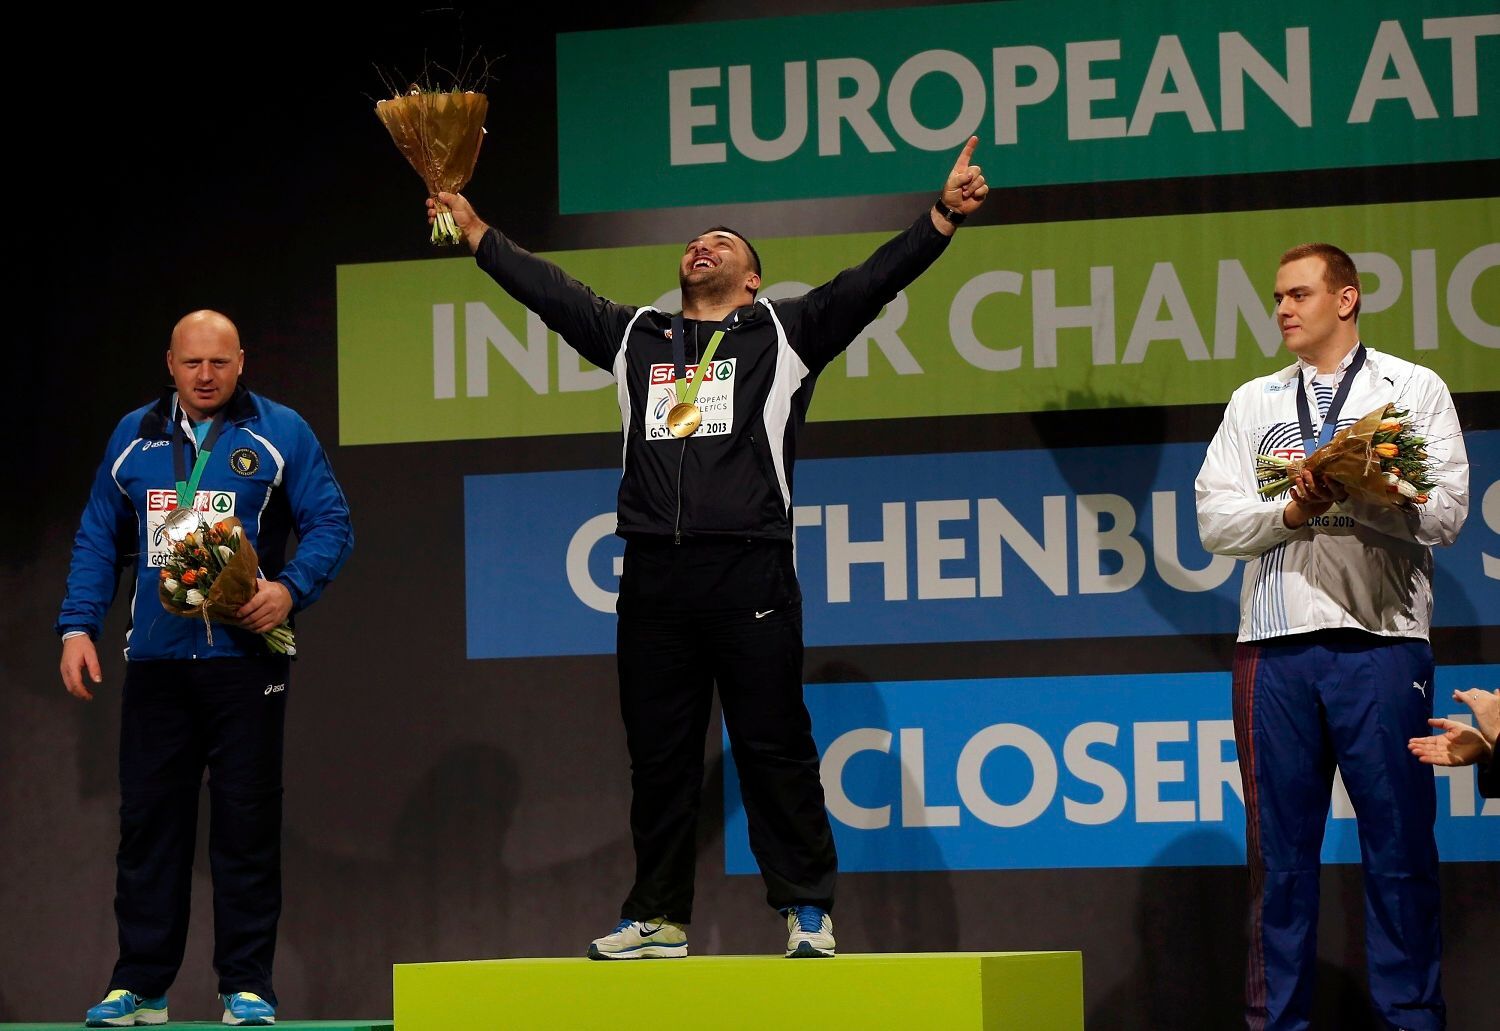 Halové ME v atletice 2013, vrh koulí: Hamza Alič (stříbrný), Asmir Kolasinač (zlatý) a Ladislav Prášil (bronzový)